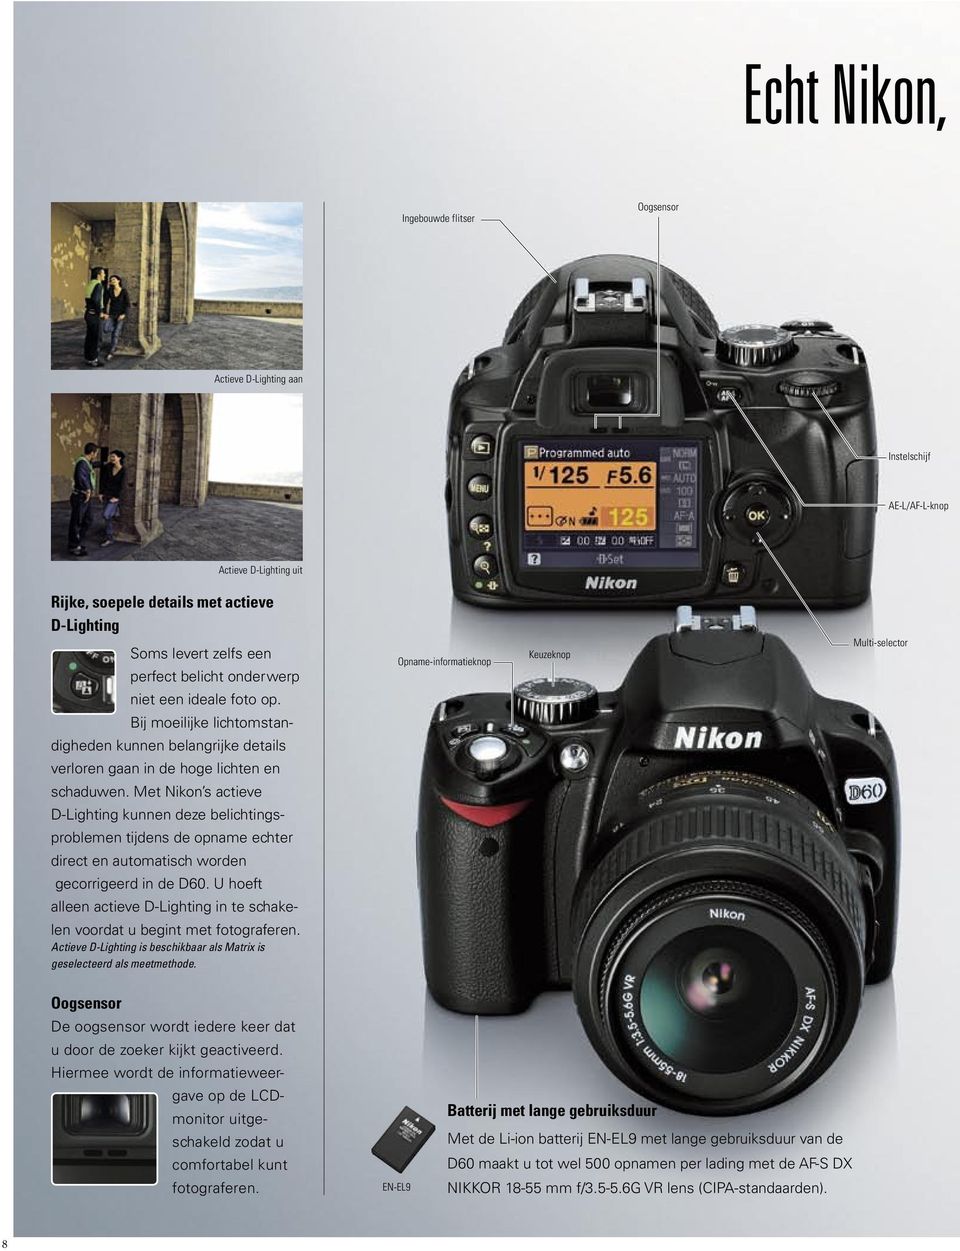 Met Nikon s actieve D-Lighting kunnen deze belichtingsproblemen tijdens de opname echter direct en automatisch worden gecorrigeerd in de D60.